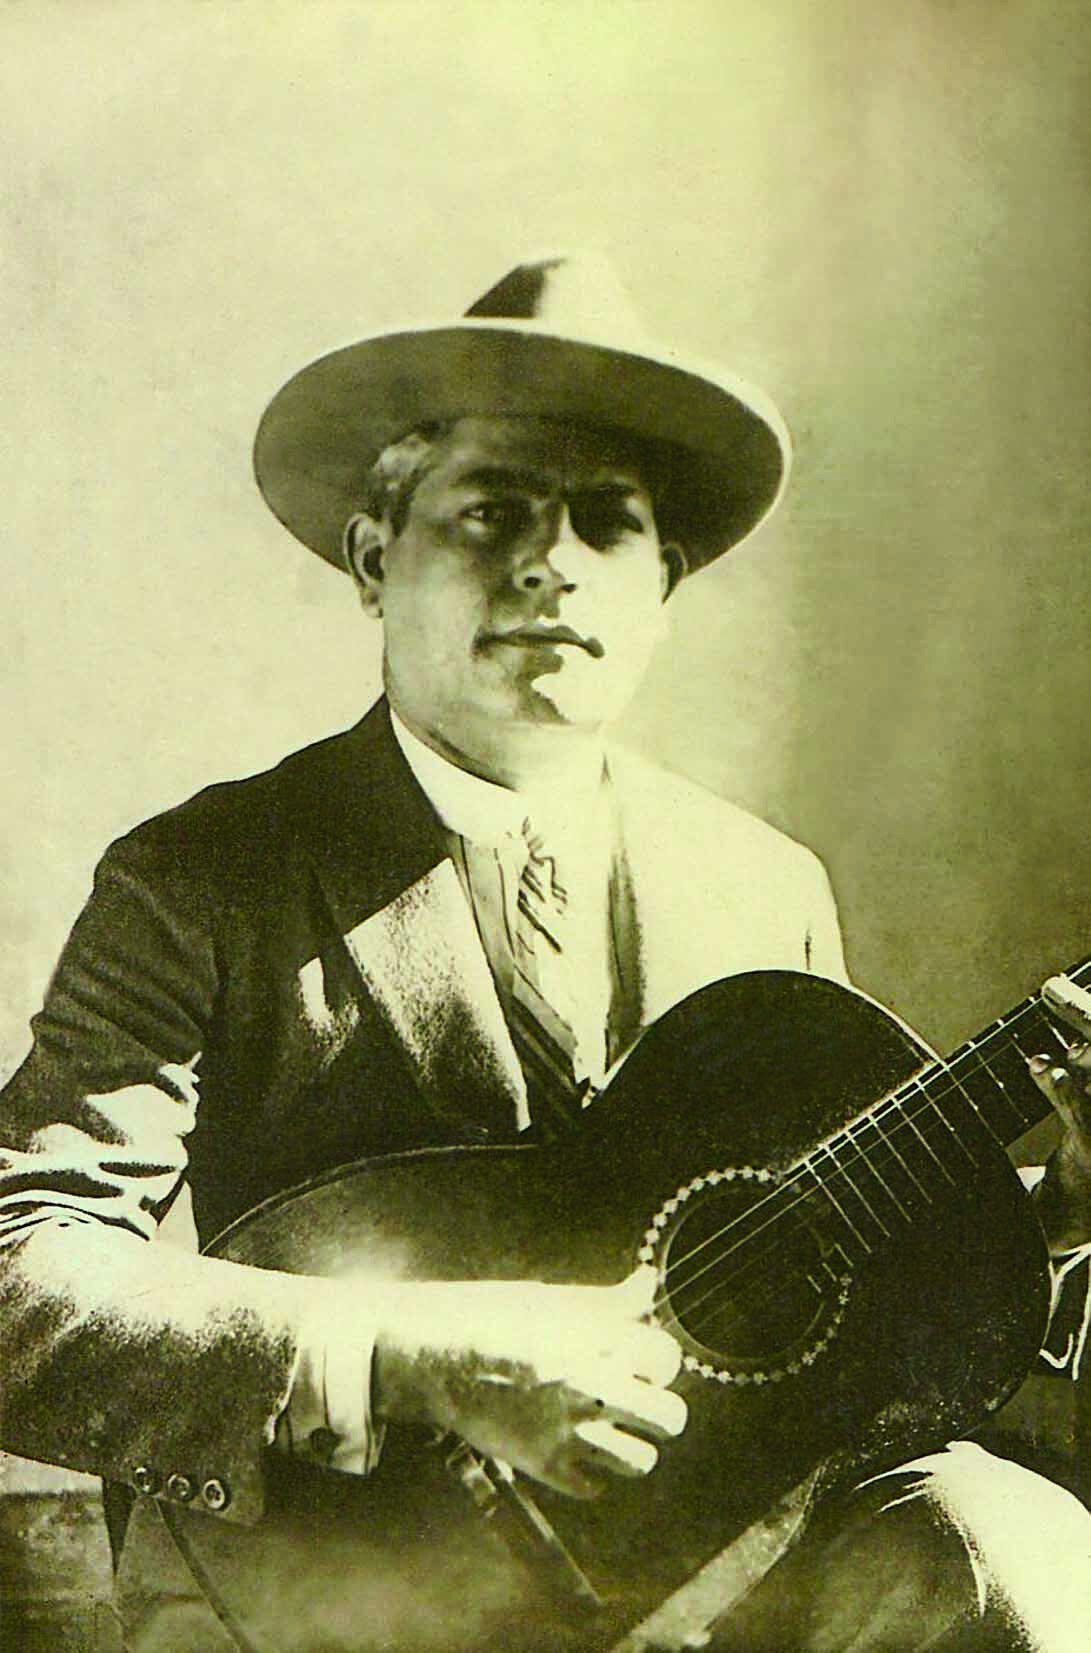 Fotografia em preto e branco. Retrato de homem de cabelo curto e chapéu com aba redonda, vestindo camisa branca, coleta, paletó e gravata. Ele segura um violão em posição de tocá-lo.